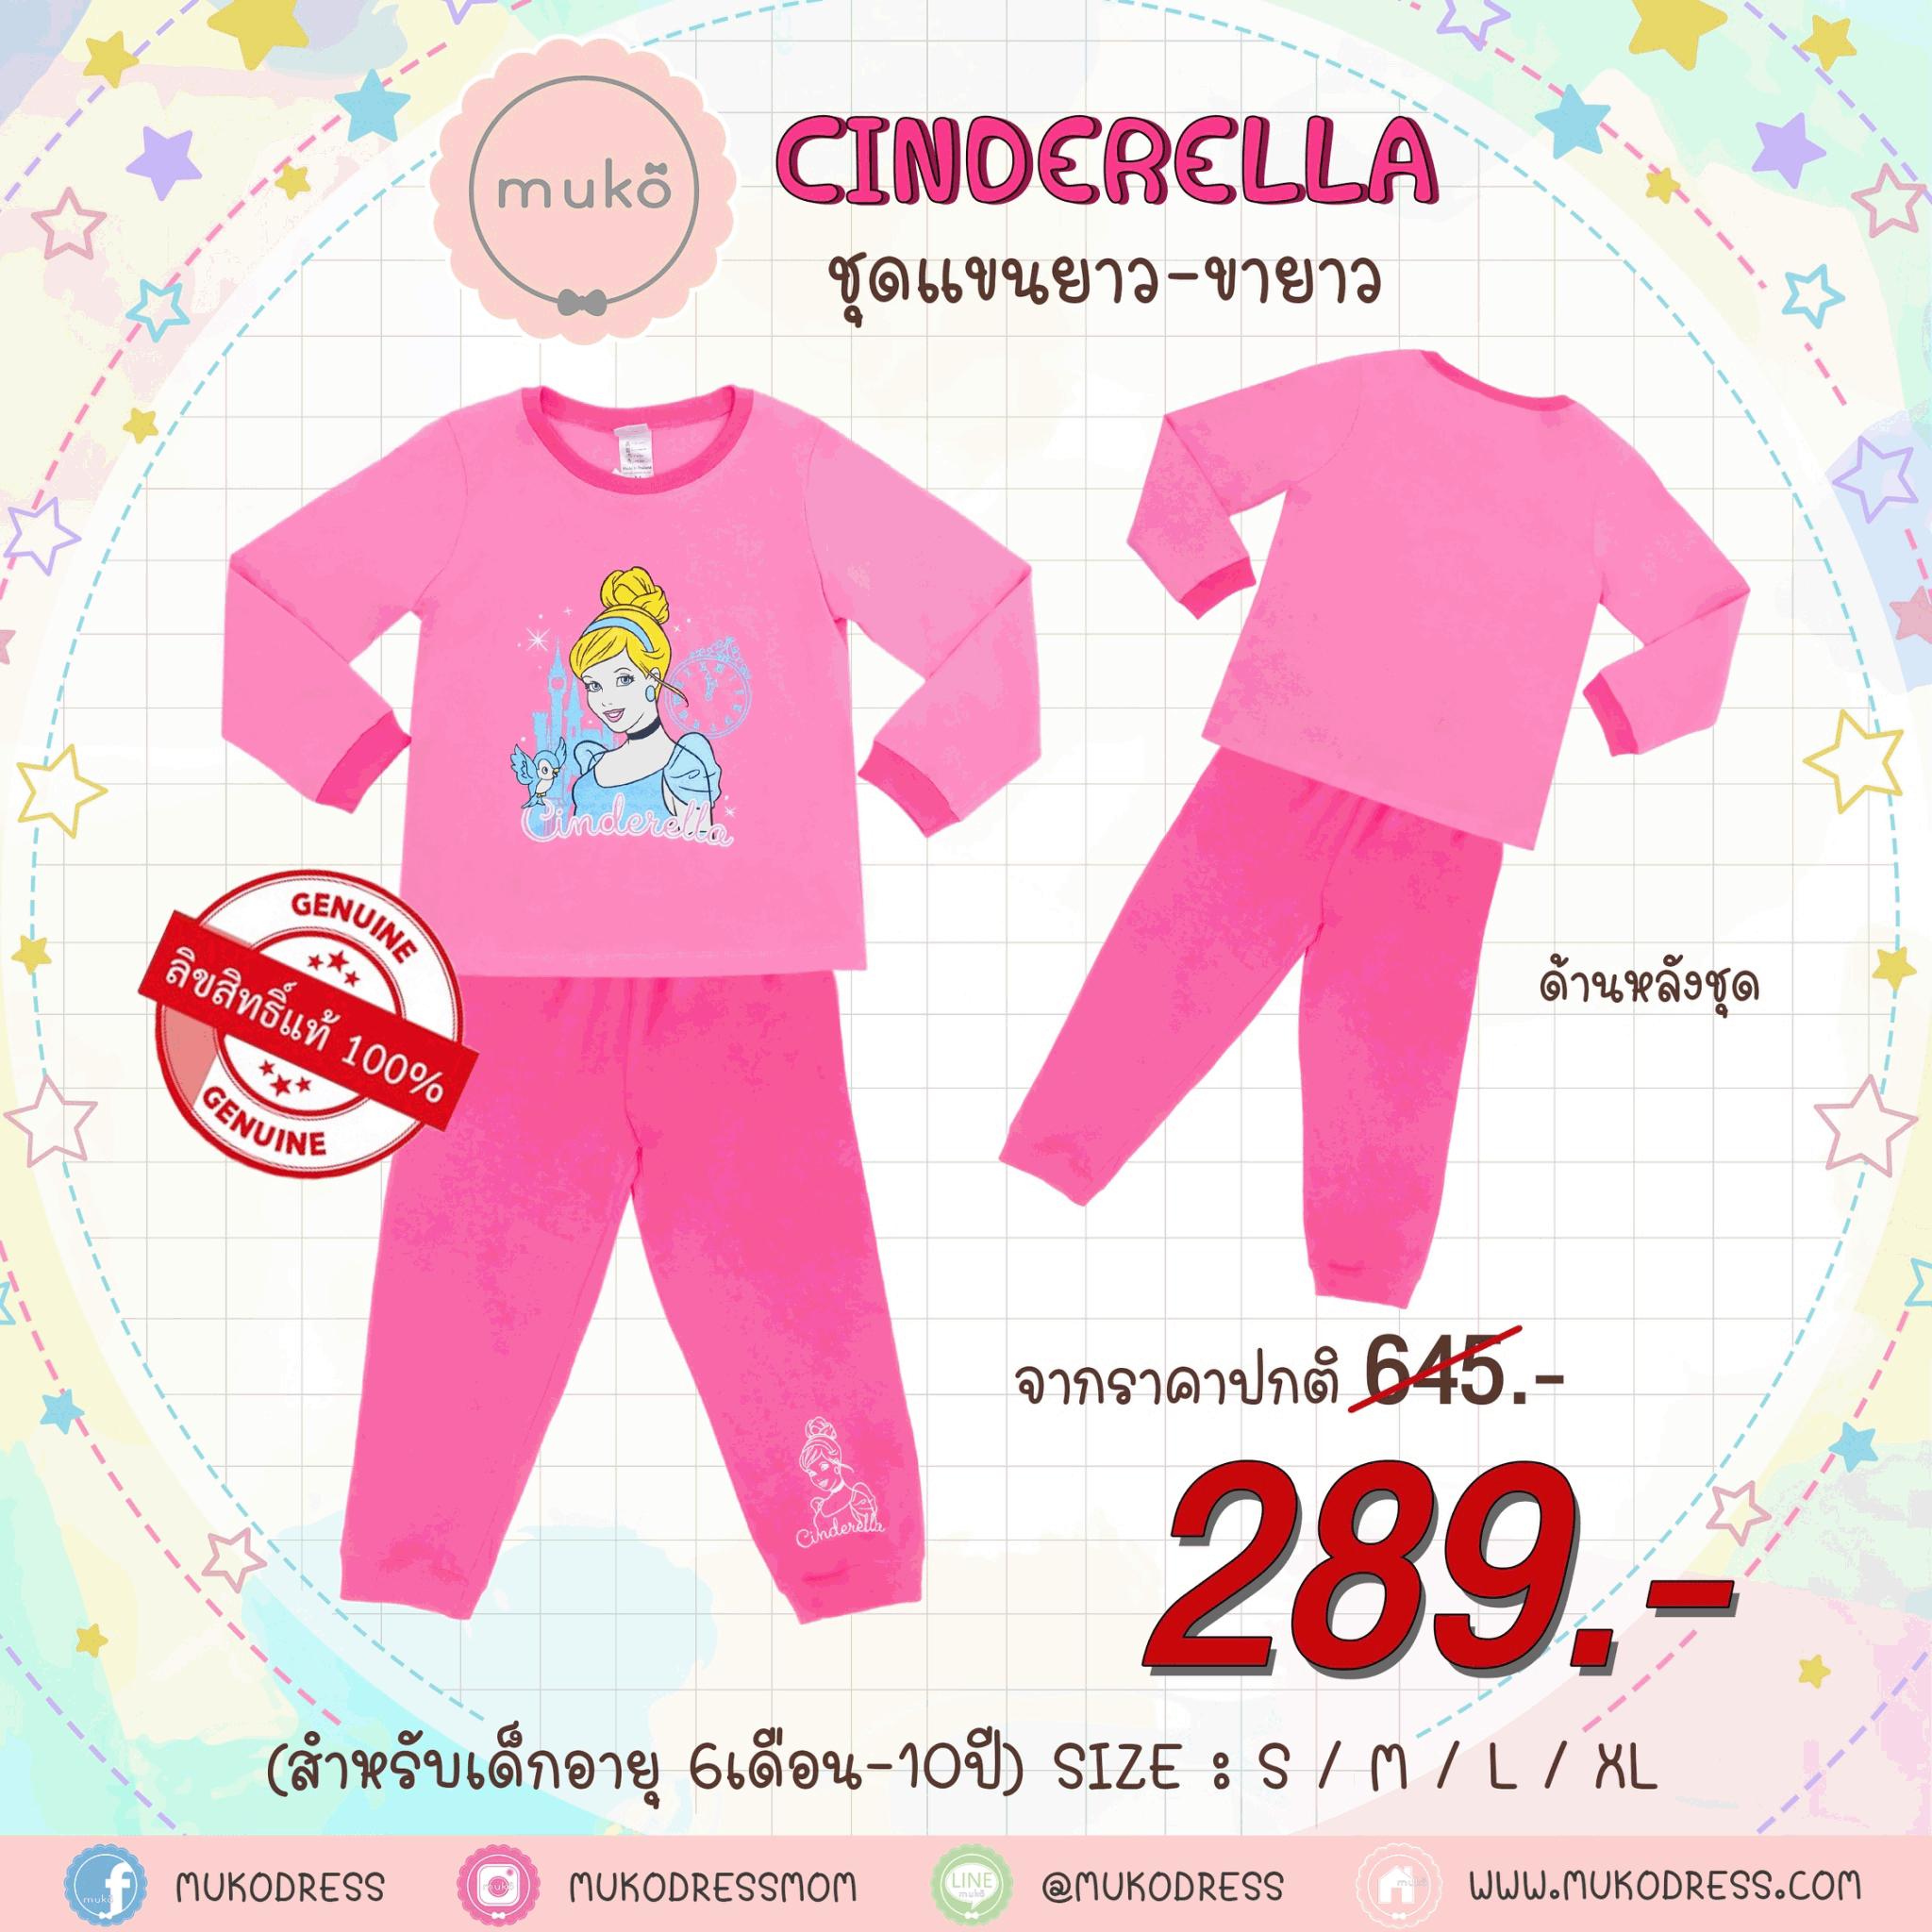 ชุดเด็ก 4-5 ขวบ แขนยาว-ขายาว (Size S) DPC127-05-XL-Pink S ลาย เจ้าหญิงซินเดอเรลล่า Cinderella สีชมพู (เจ้าหญิงและนกน้อย)